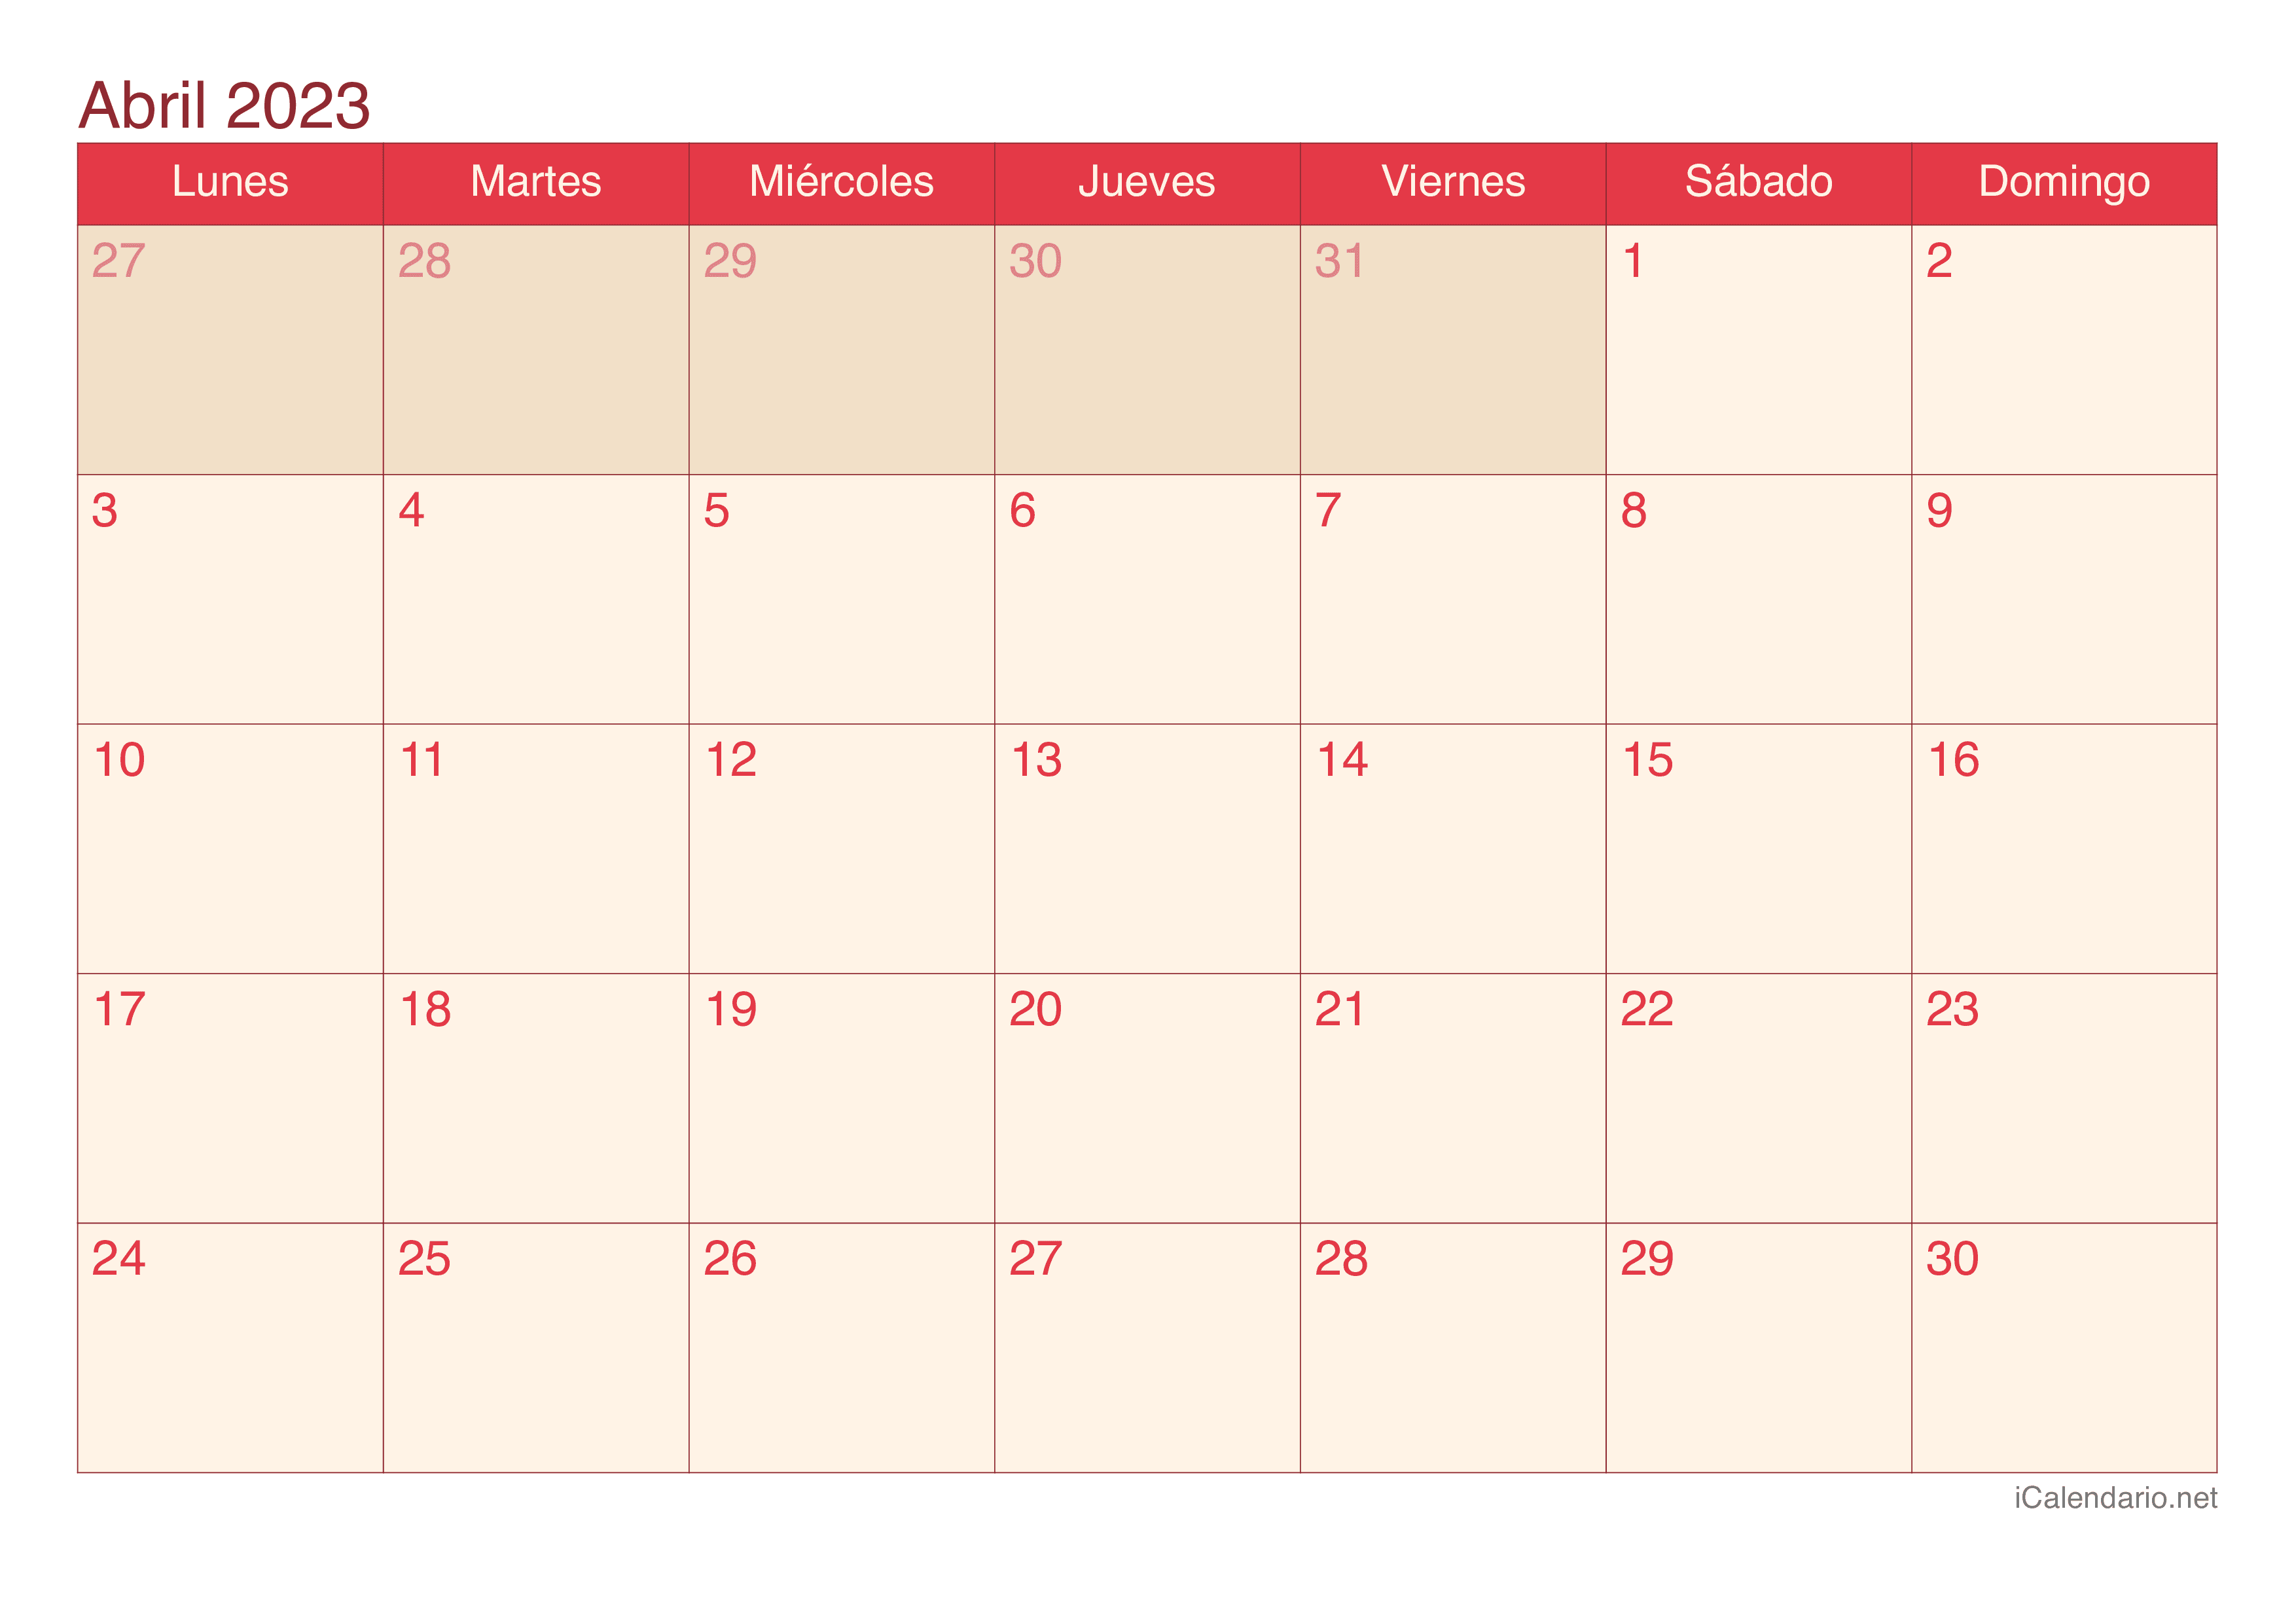 Calendario de abril 2023 - Cherry